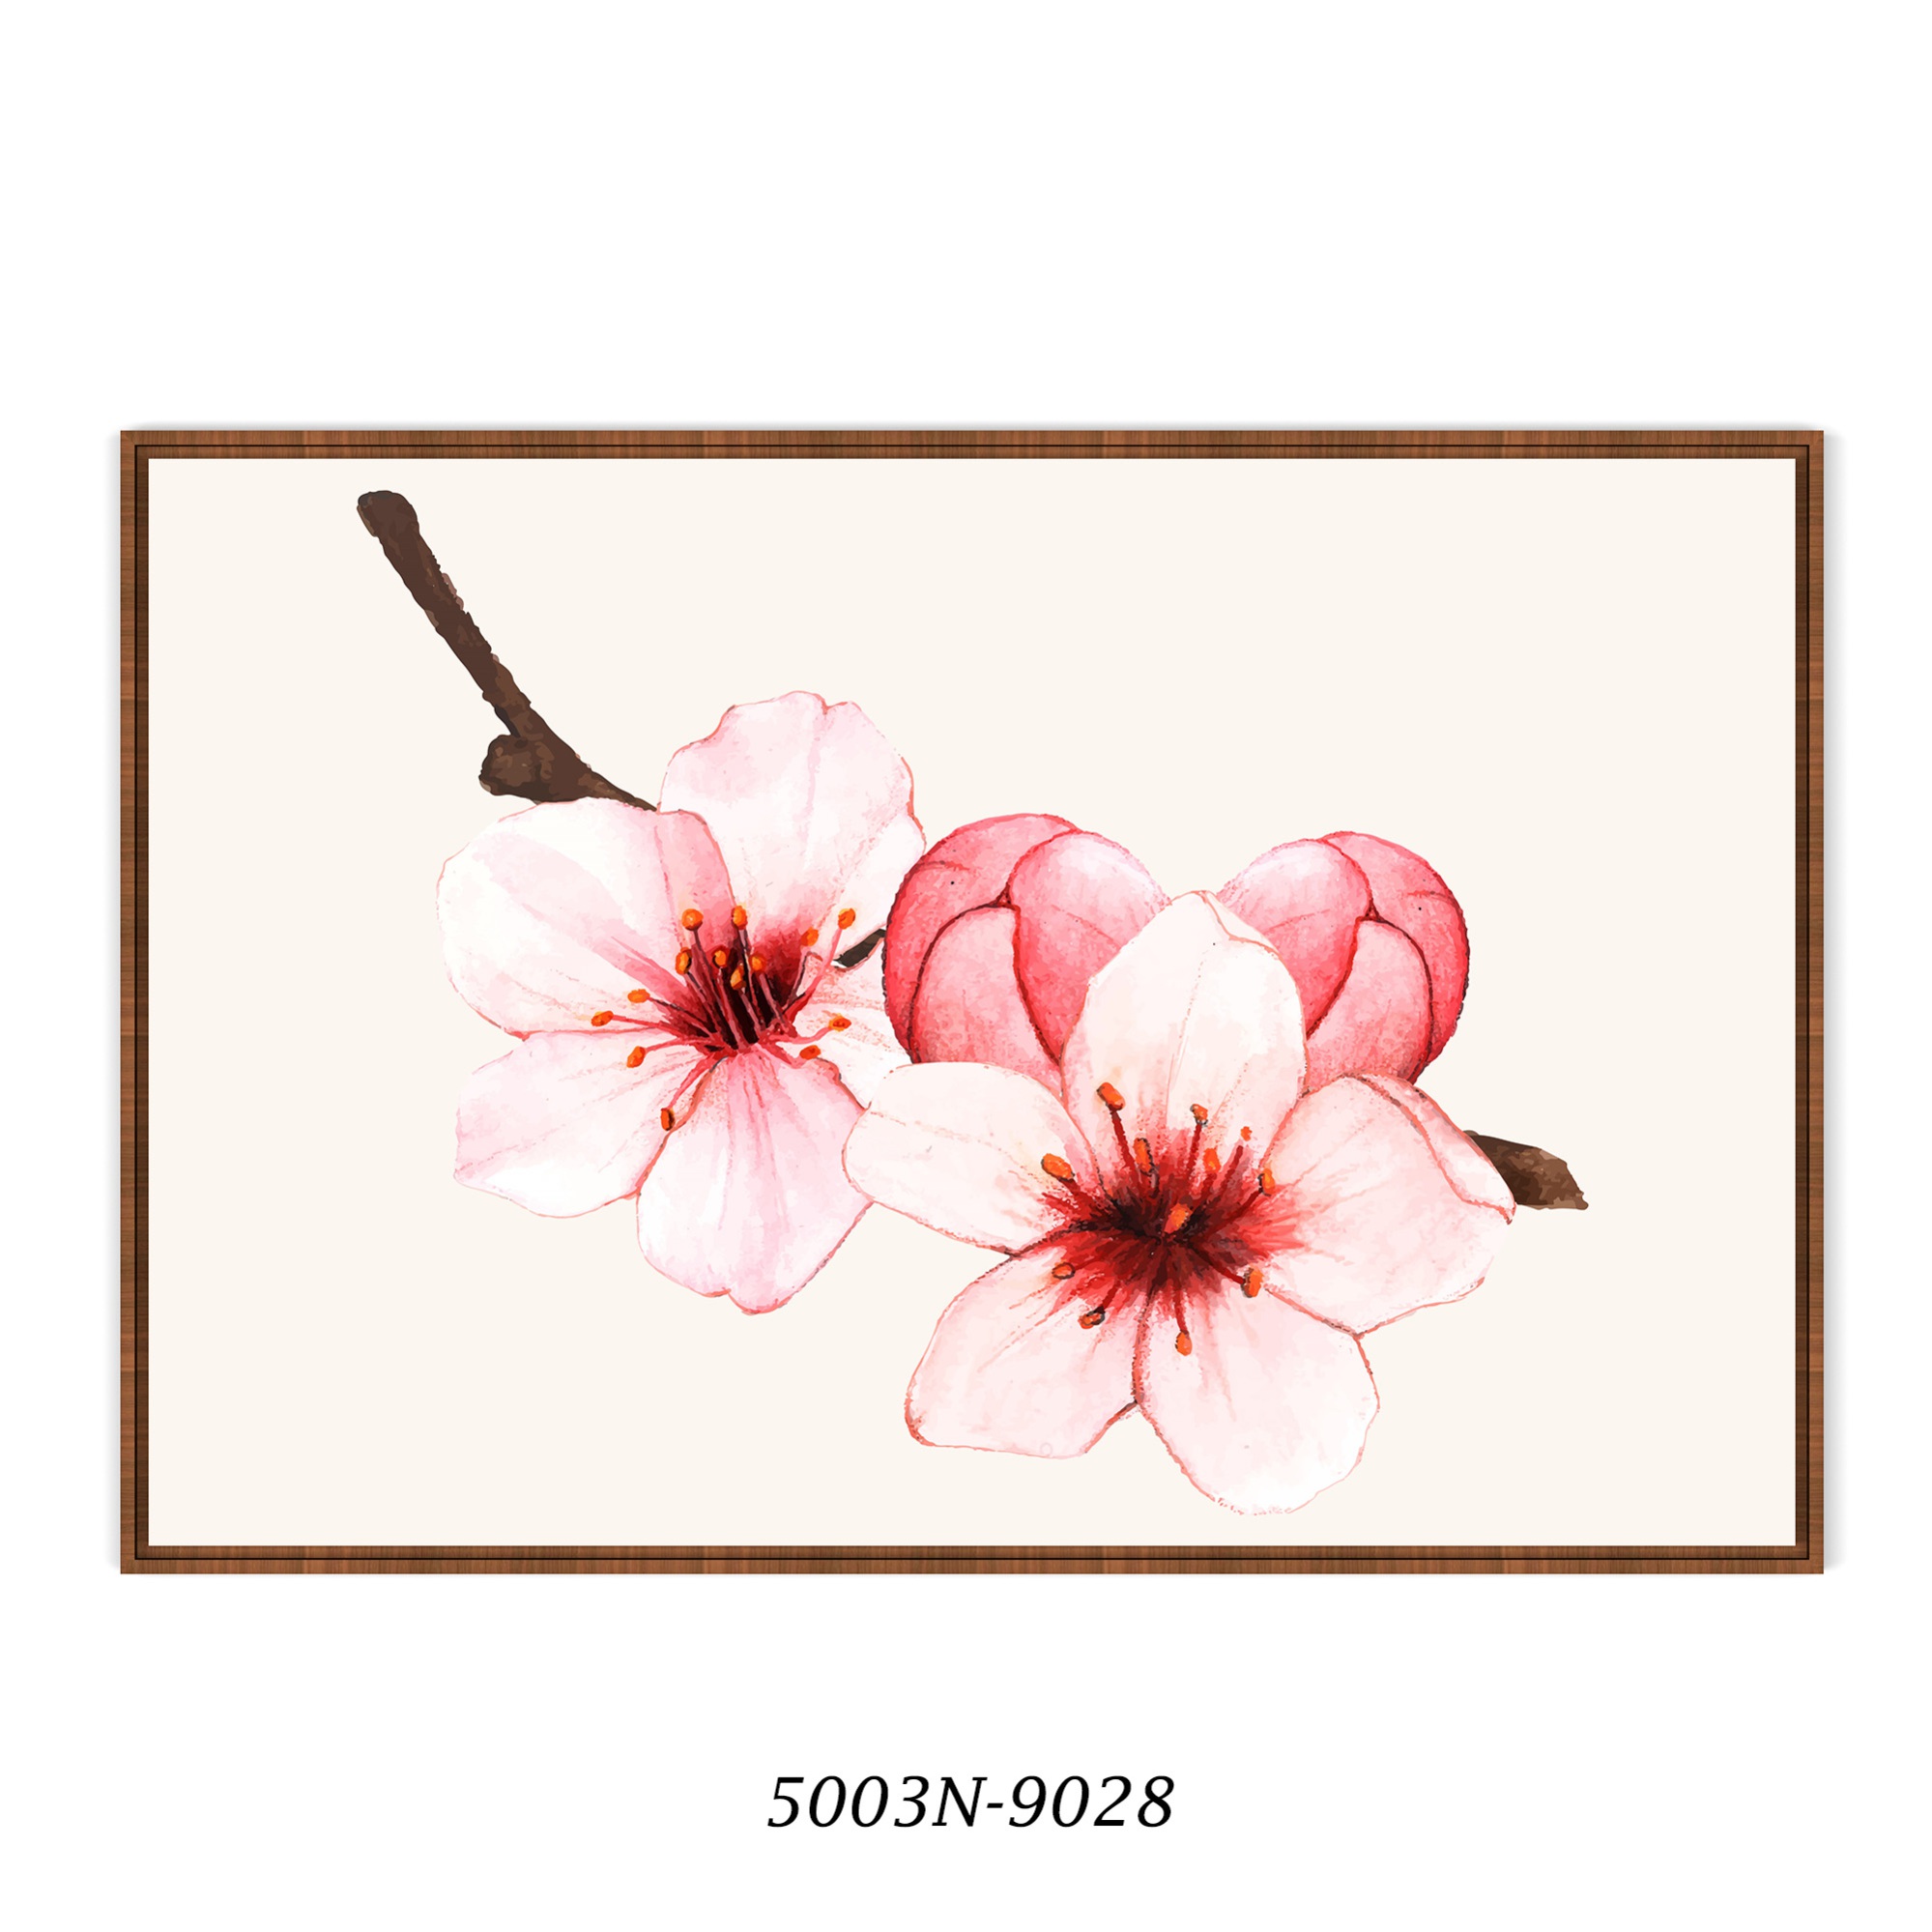 Quadro Decorativo com Imagem de Flor em Tons de Rosa